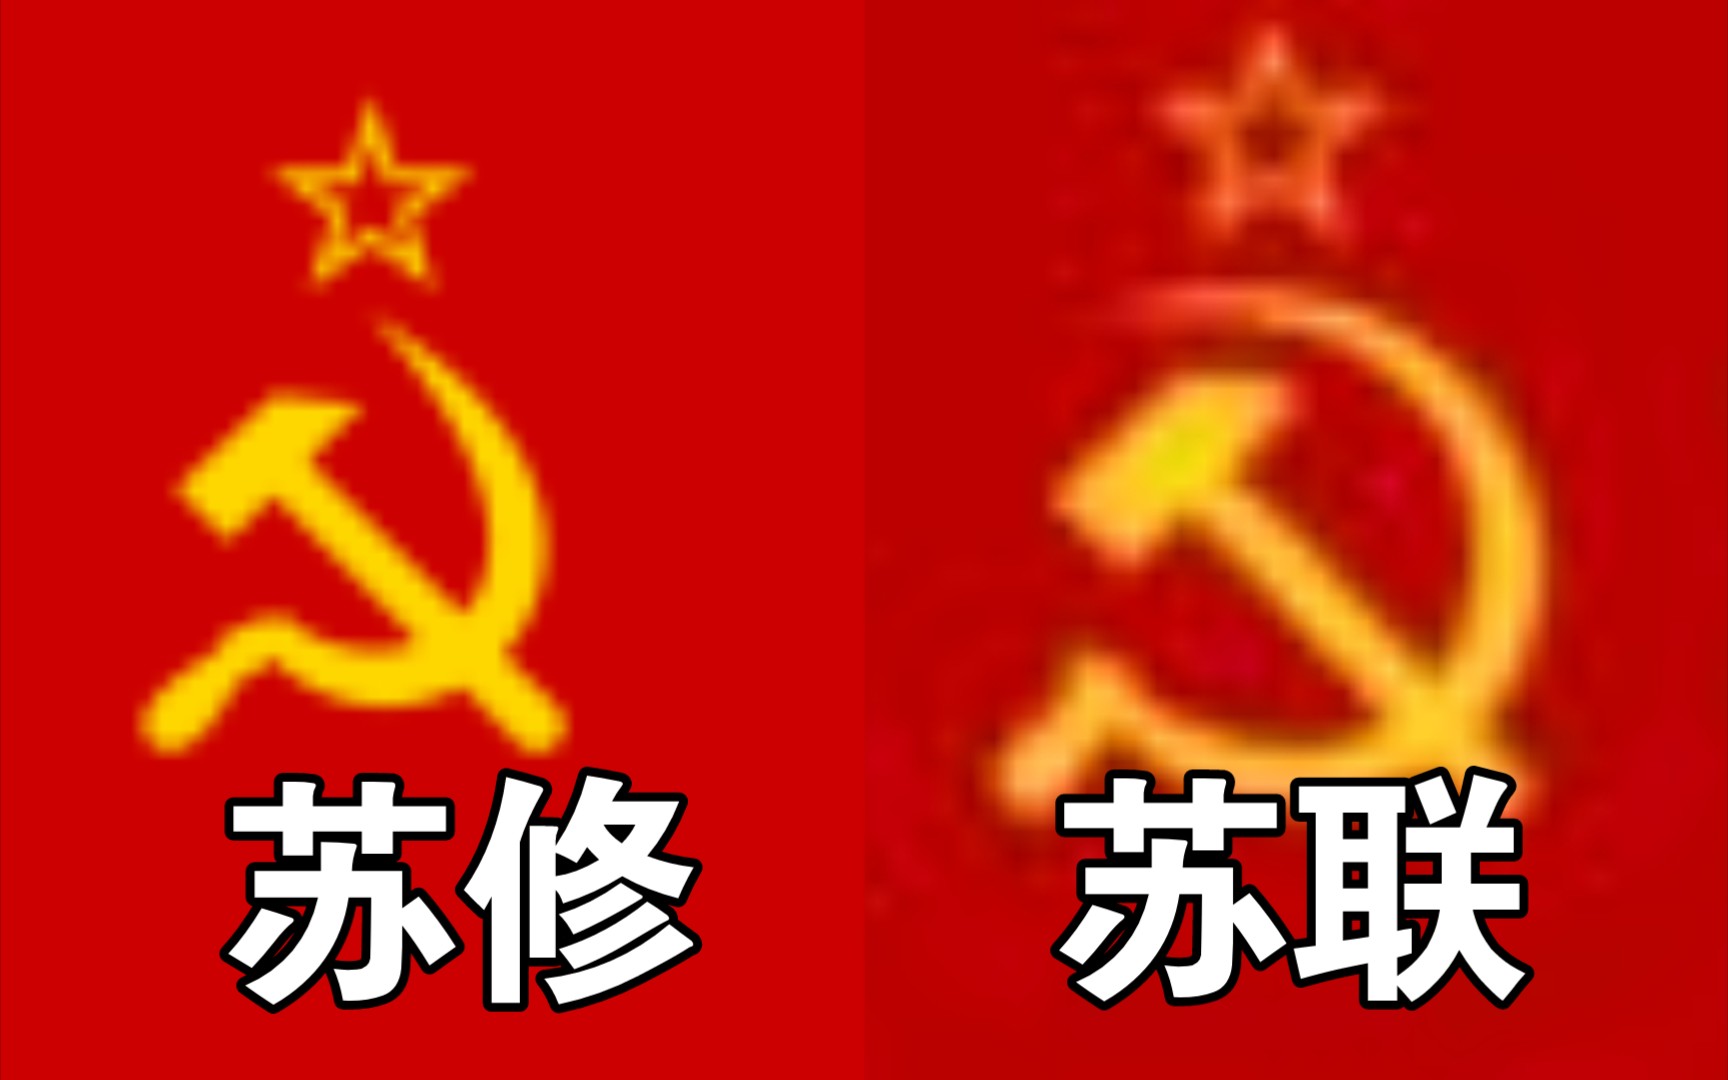 苏修国旗的区别图片